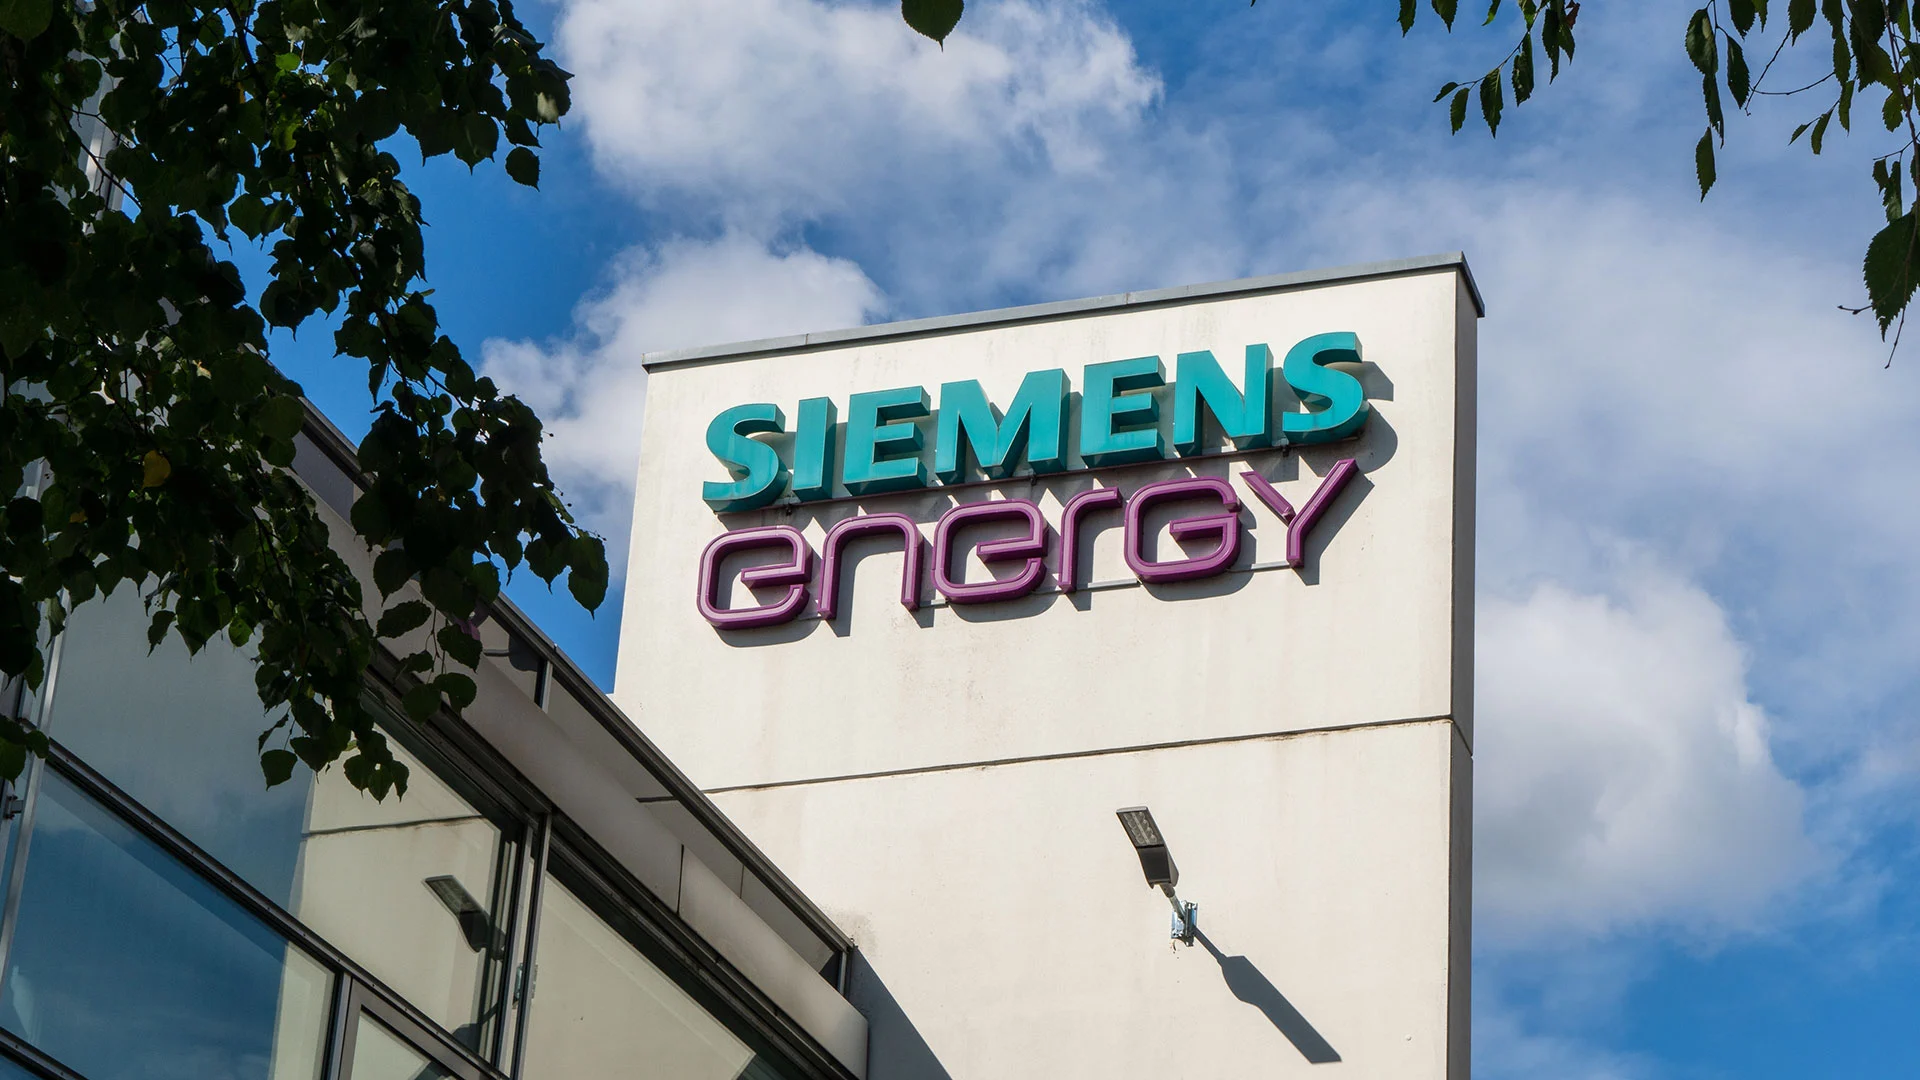 Die Aufholjagd beginnt: Darum könnte die Siemens&#8209;Energy&#8209;Aktie fast 30% zulegen (Foto: Mo Photography Berlin/Shutterstock)